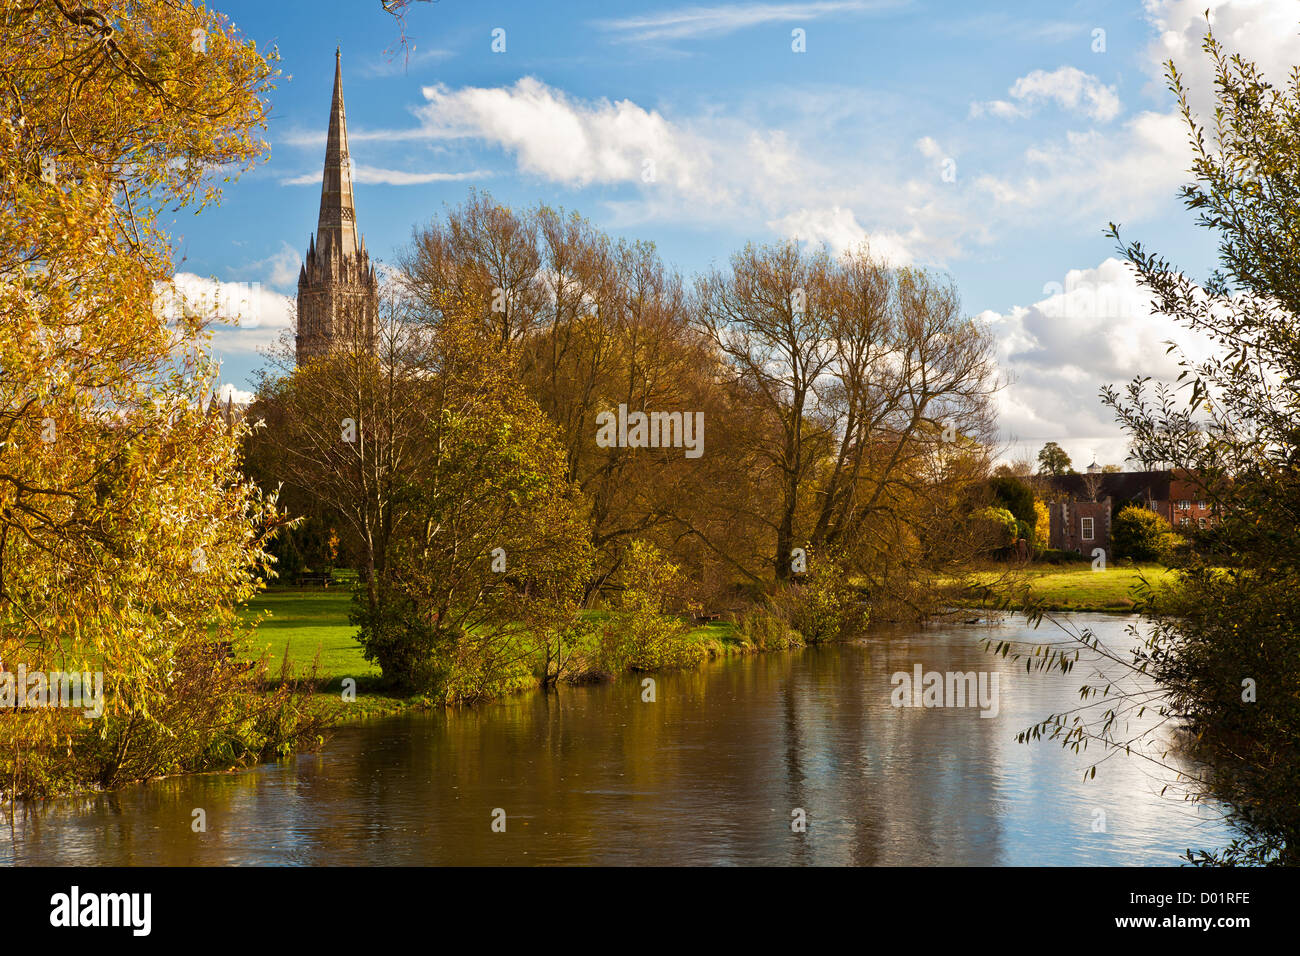 Ein Herbst Blick auf den Turm der mittelalterlichen Kathedrale von Salisbury, Wiltshire, England, UK mit dem Fluss Avon im Vordergrund. Stockfoto